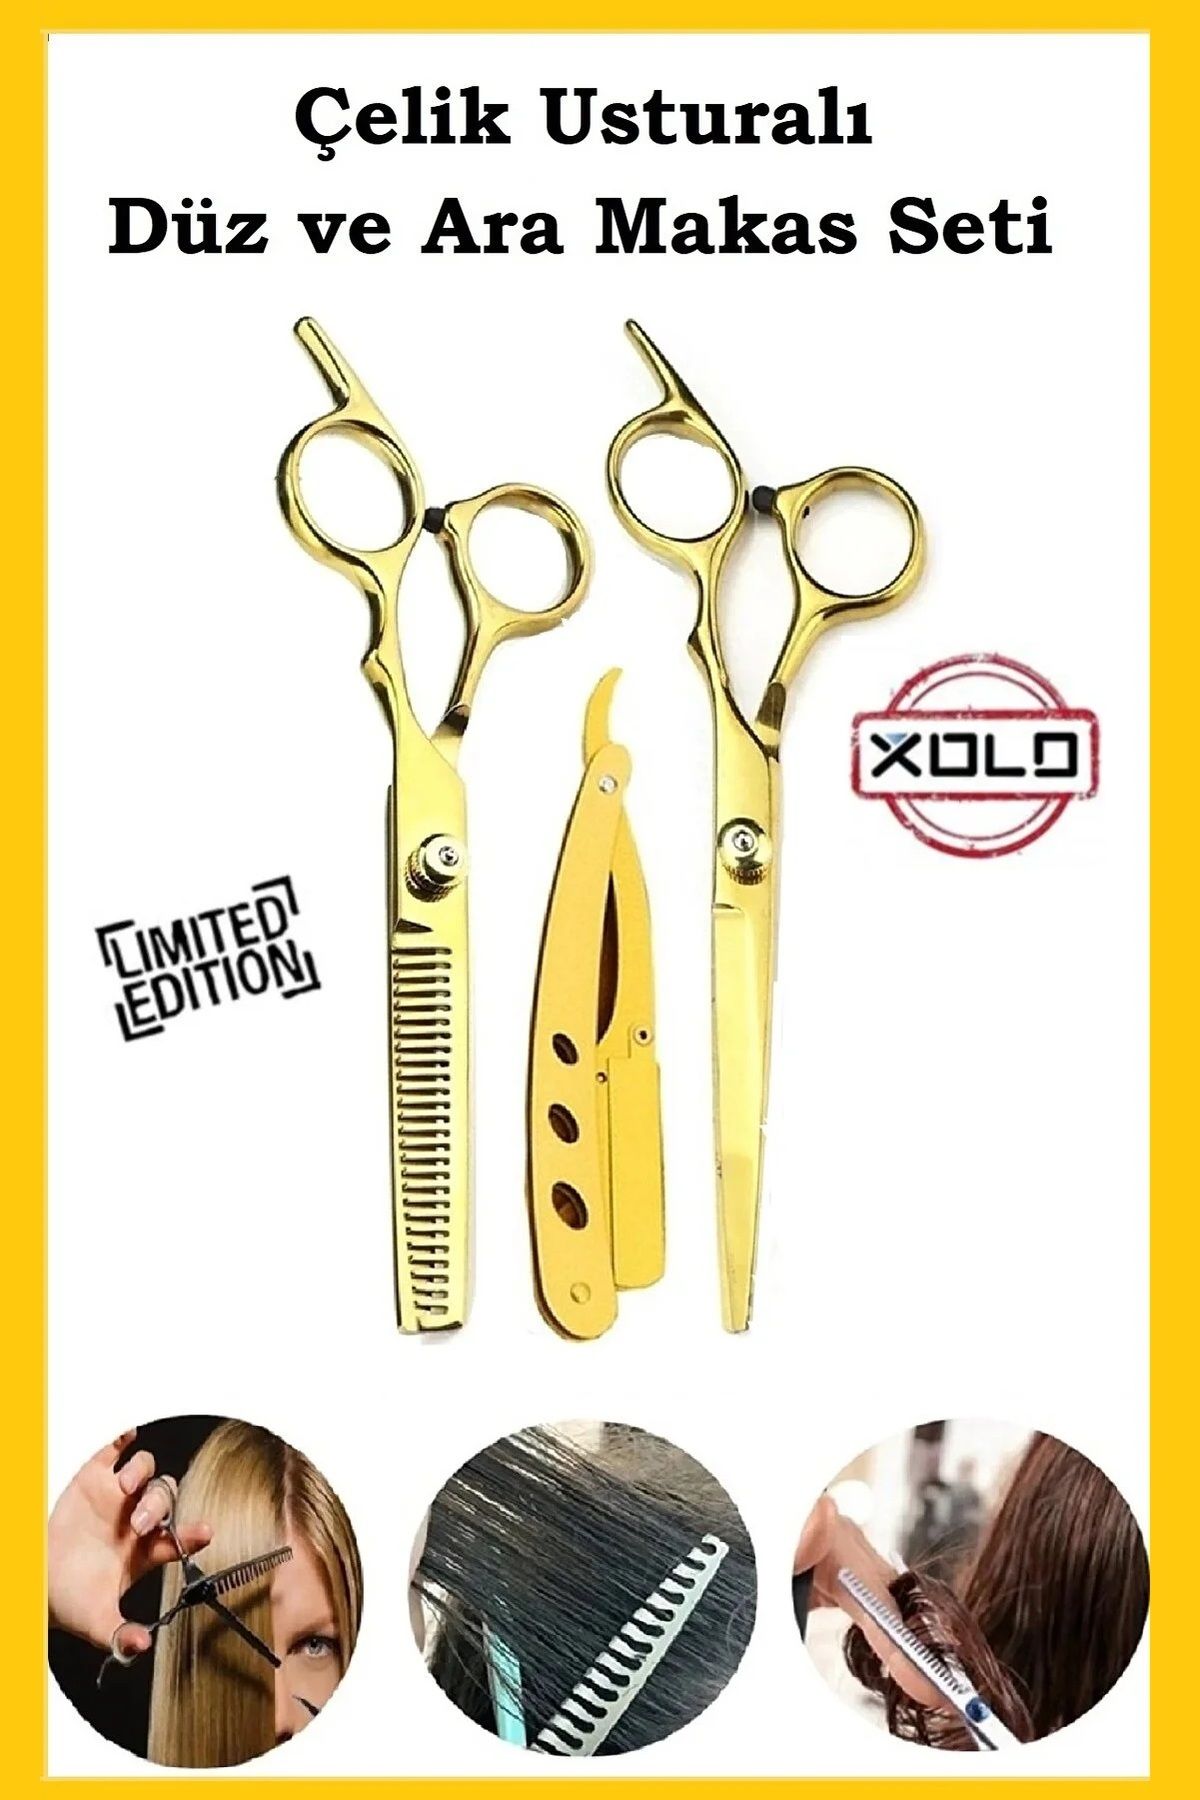 Xolo Çelik Altın Usturalı 6.5 inç Profesyonel Berber Kuaför Saç Kesim Ara ve Düz Makas Ustura Seti Xlq584